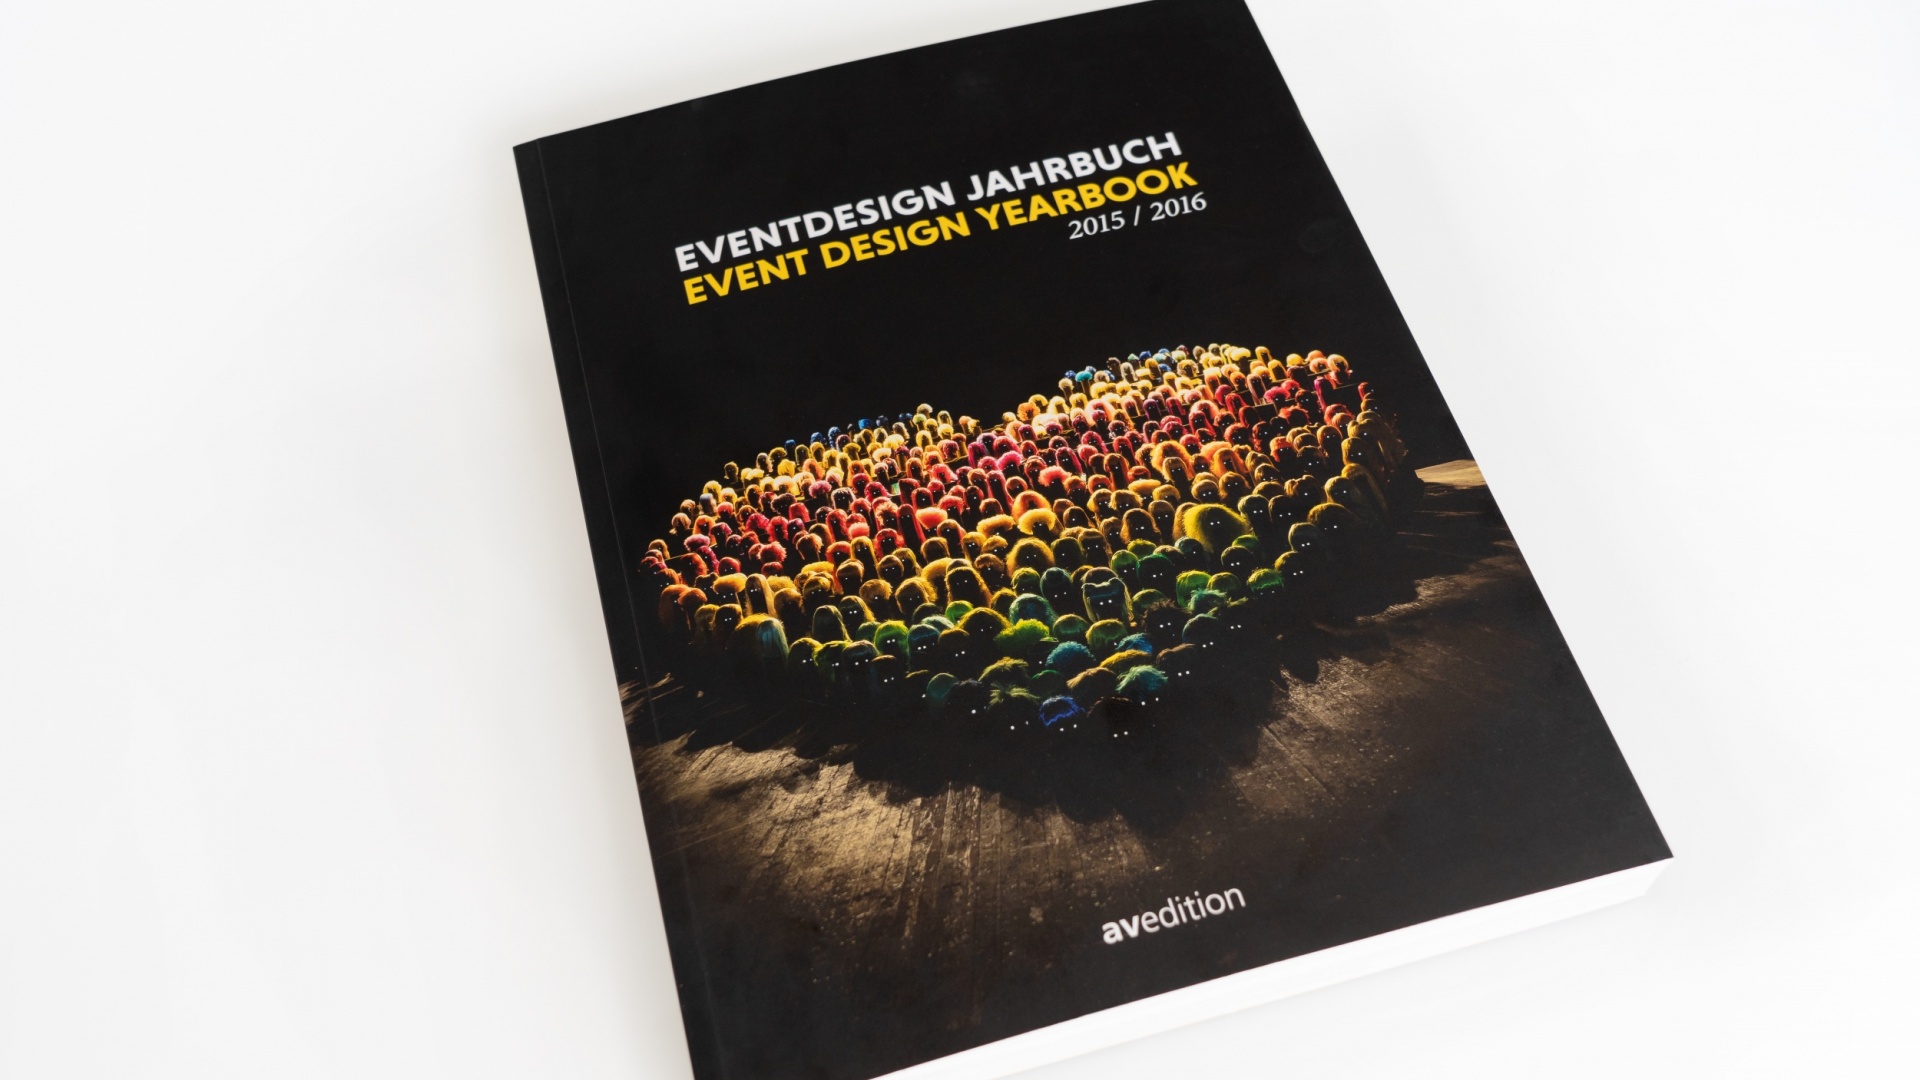 Eventdesign Jahrbuch 2015/2016